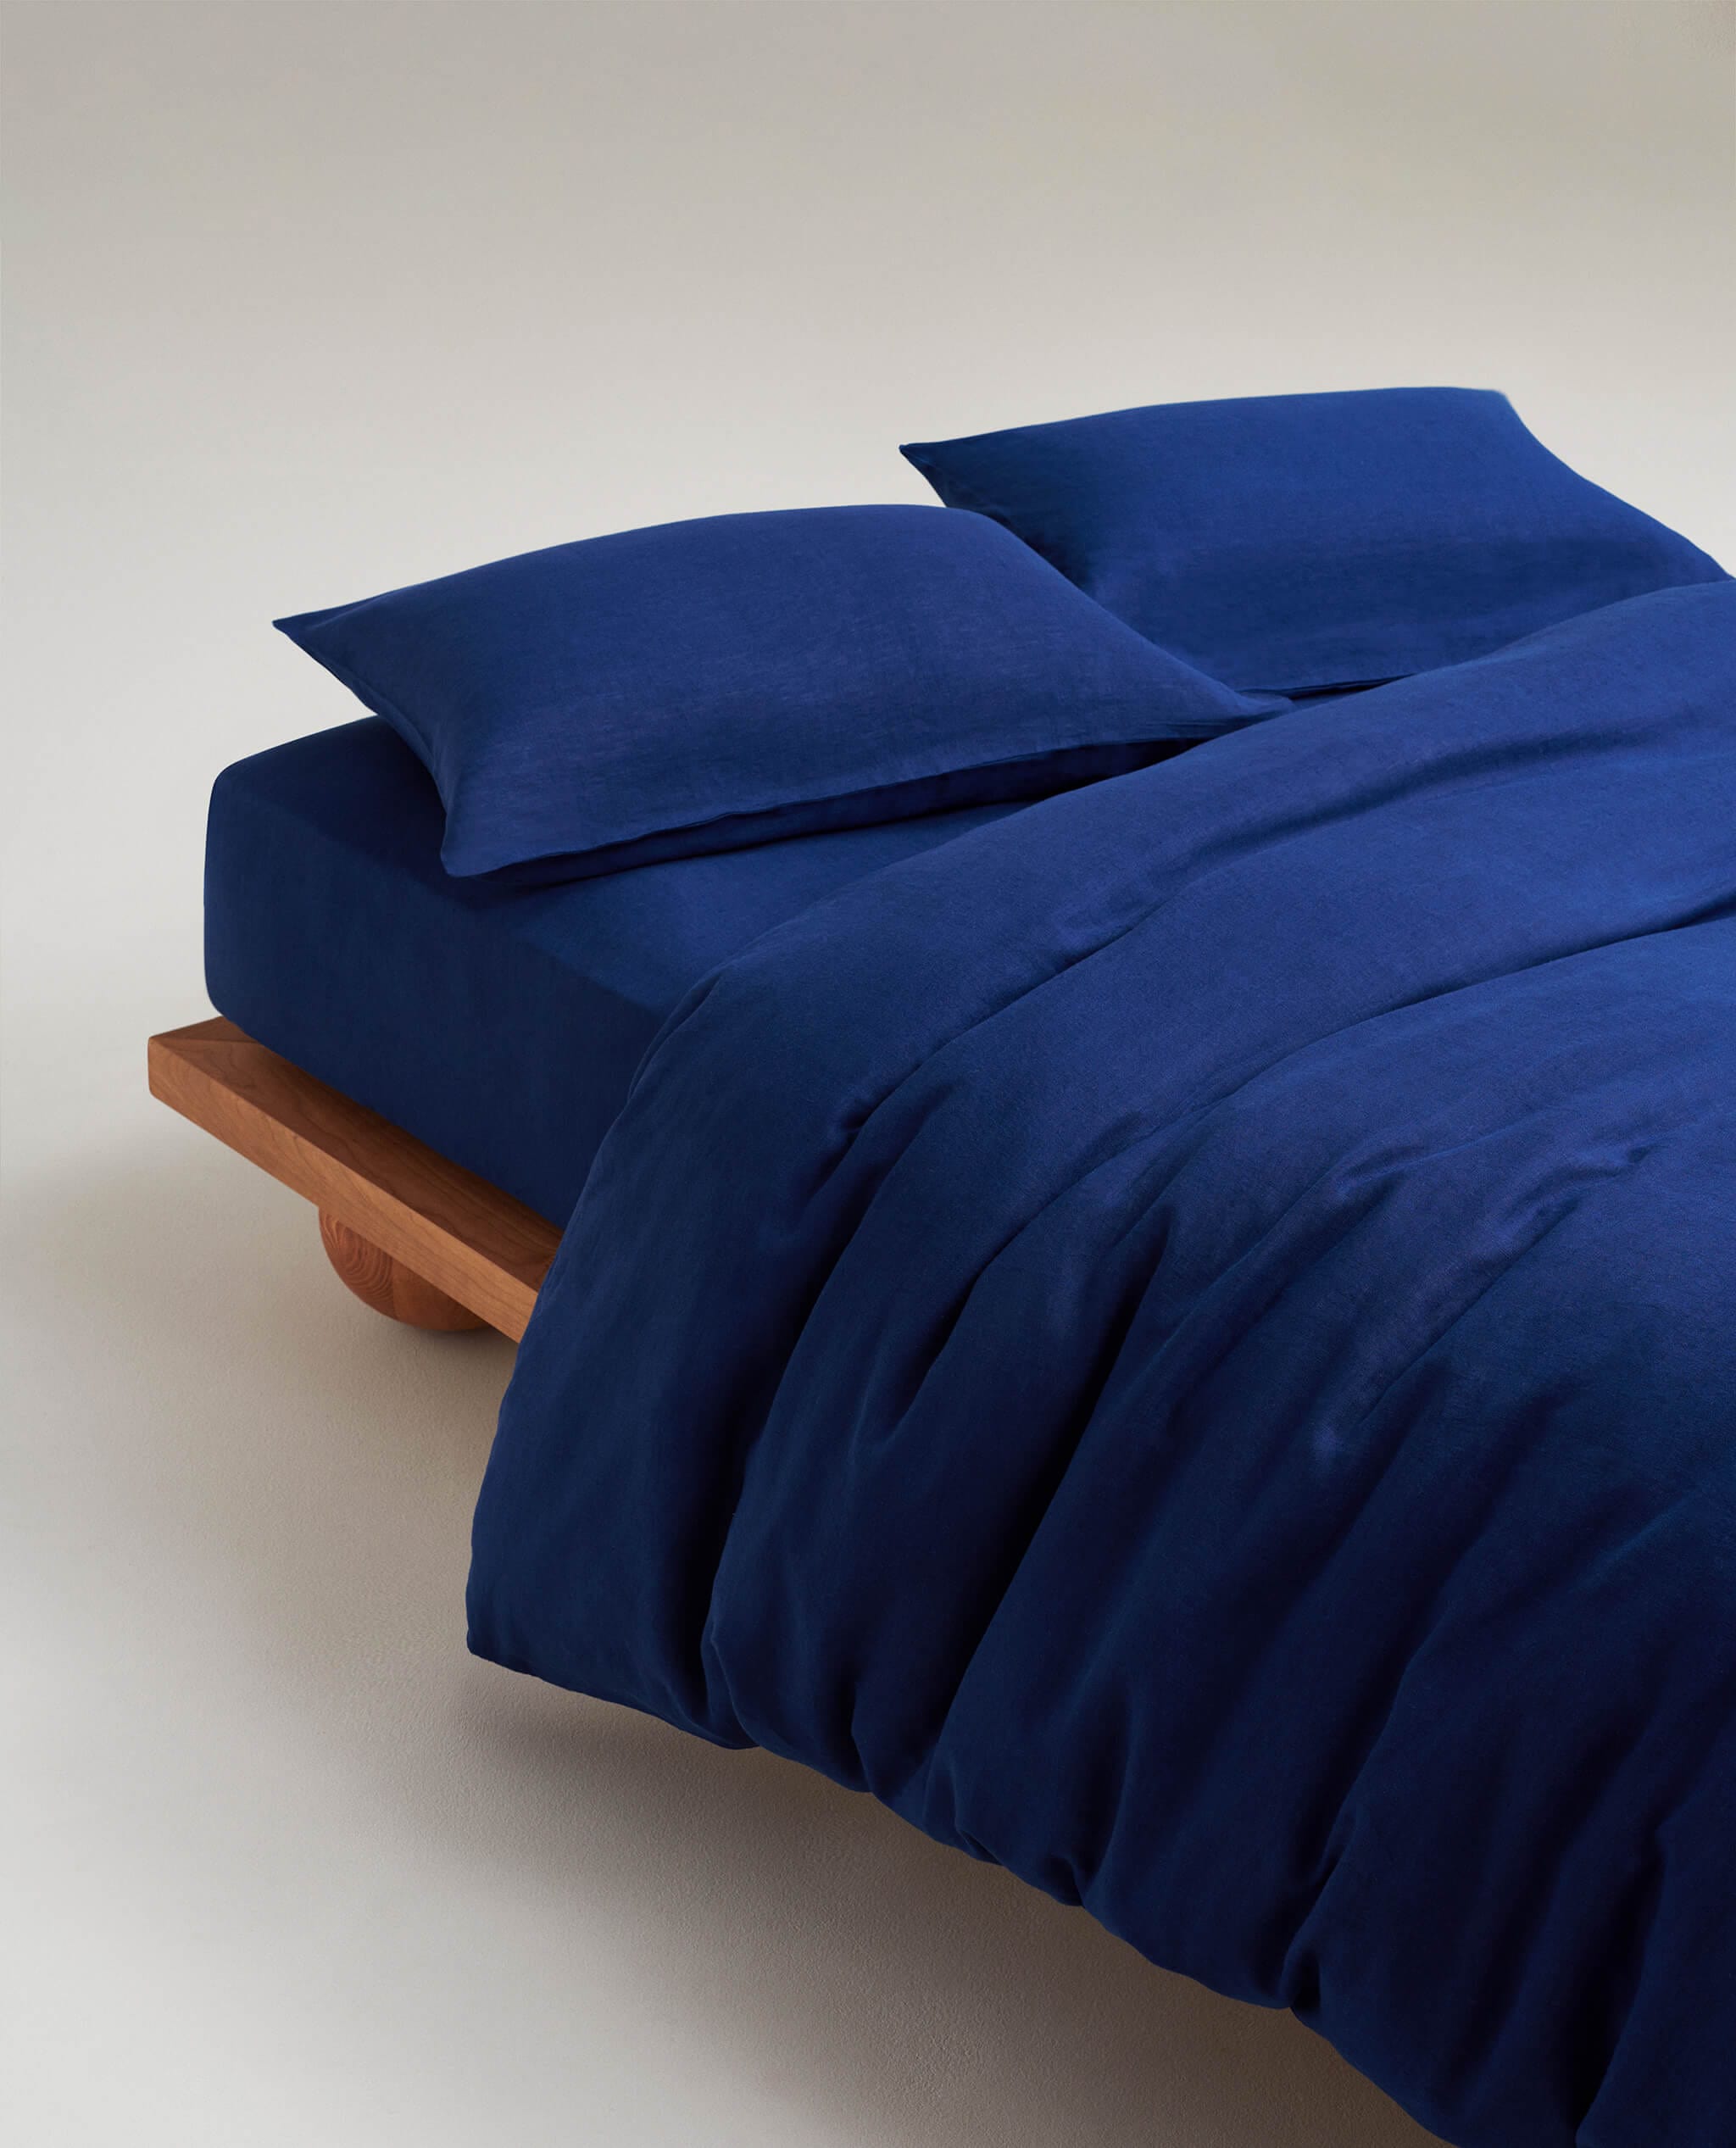 Relaxed & Refined Linen Duvet Cover